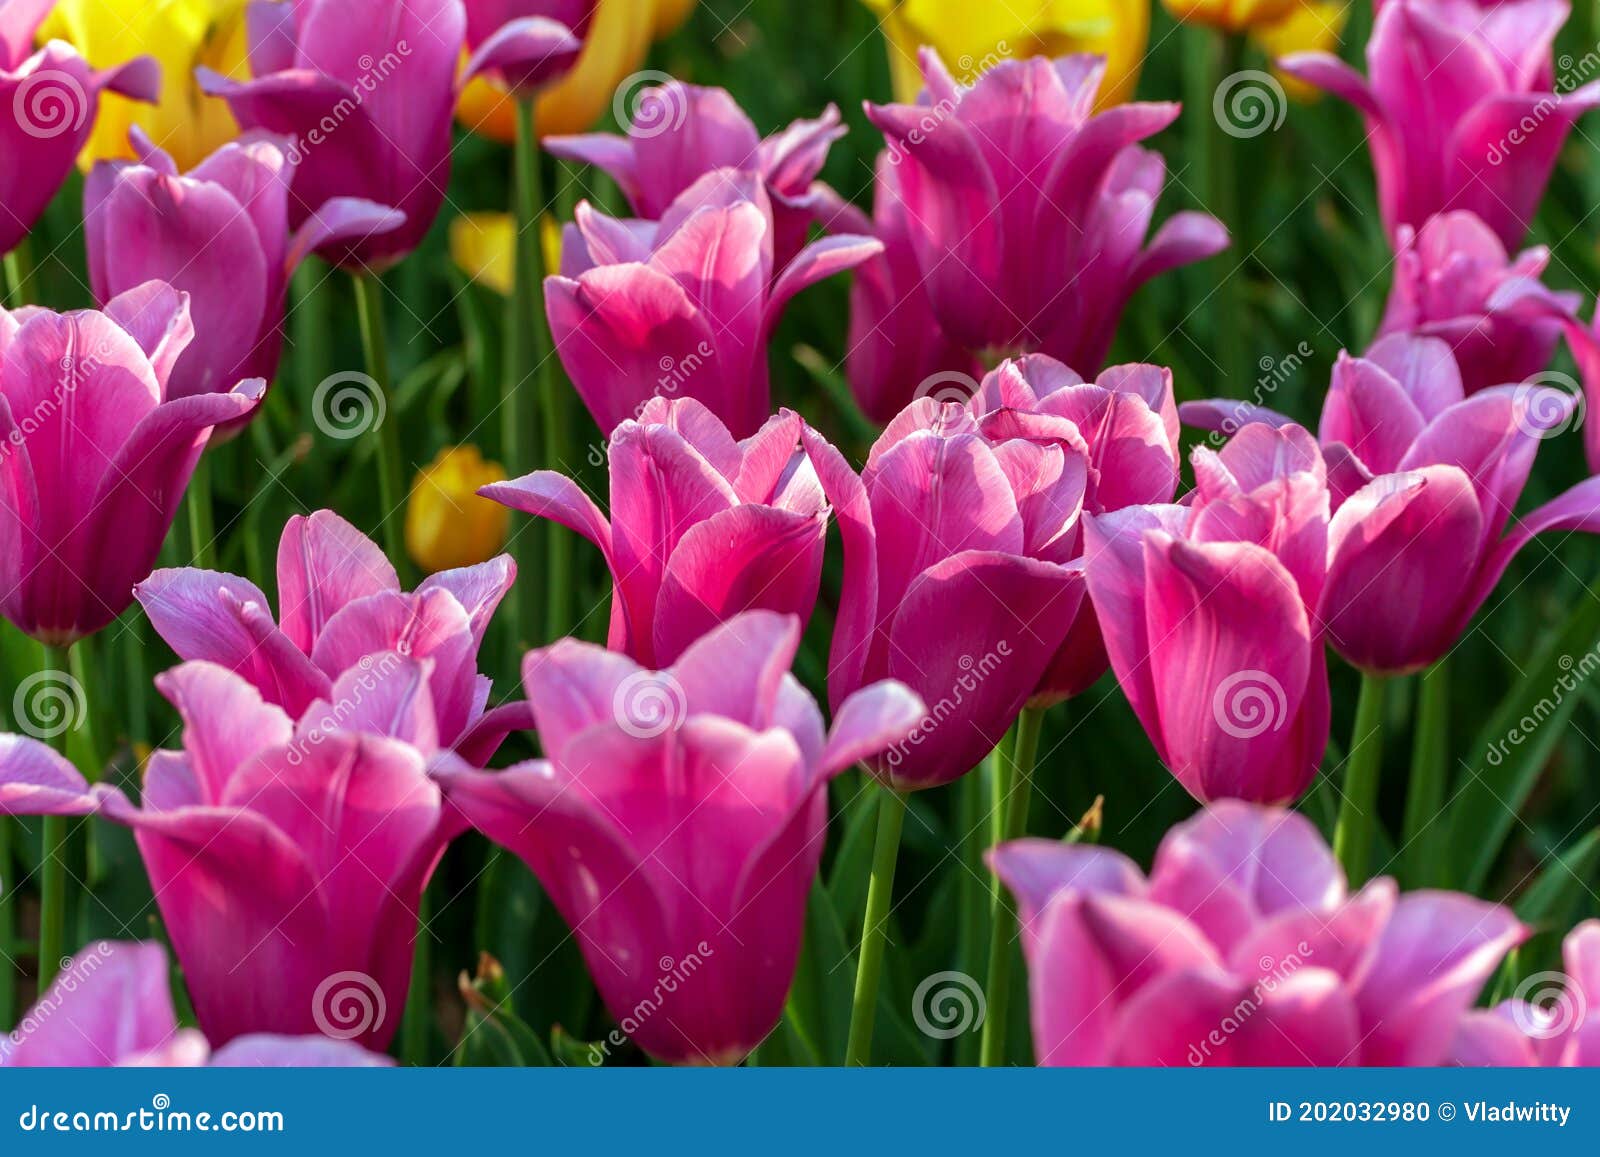 Estación De Tulipanes. Flores De Los Tulipanes De La Mezcla De Cultivos. Foto de archivo de saludo, fondo: 202032980